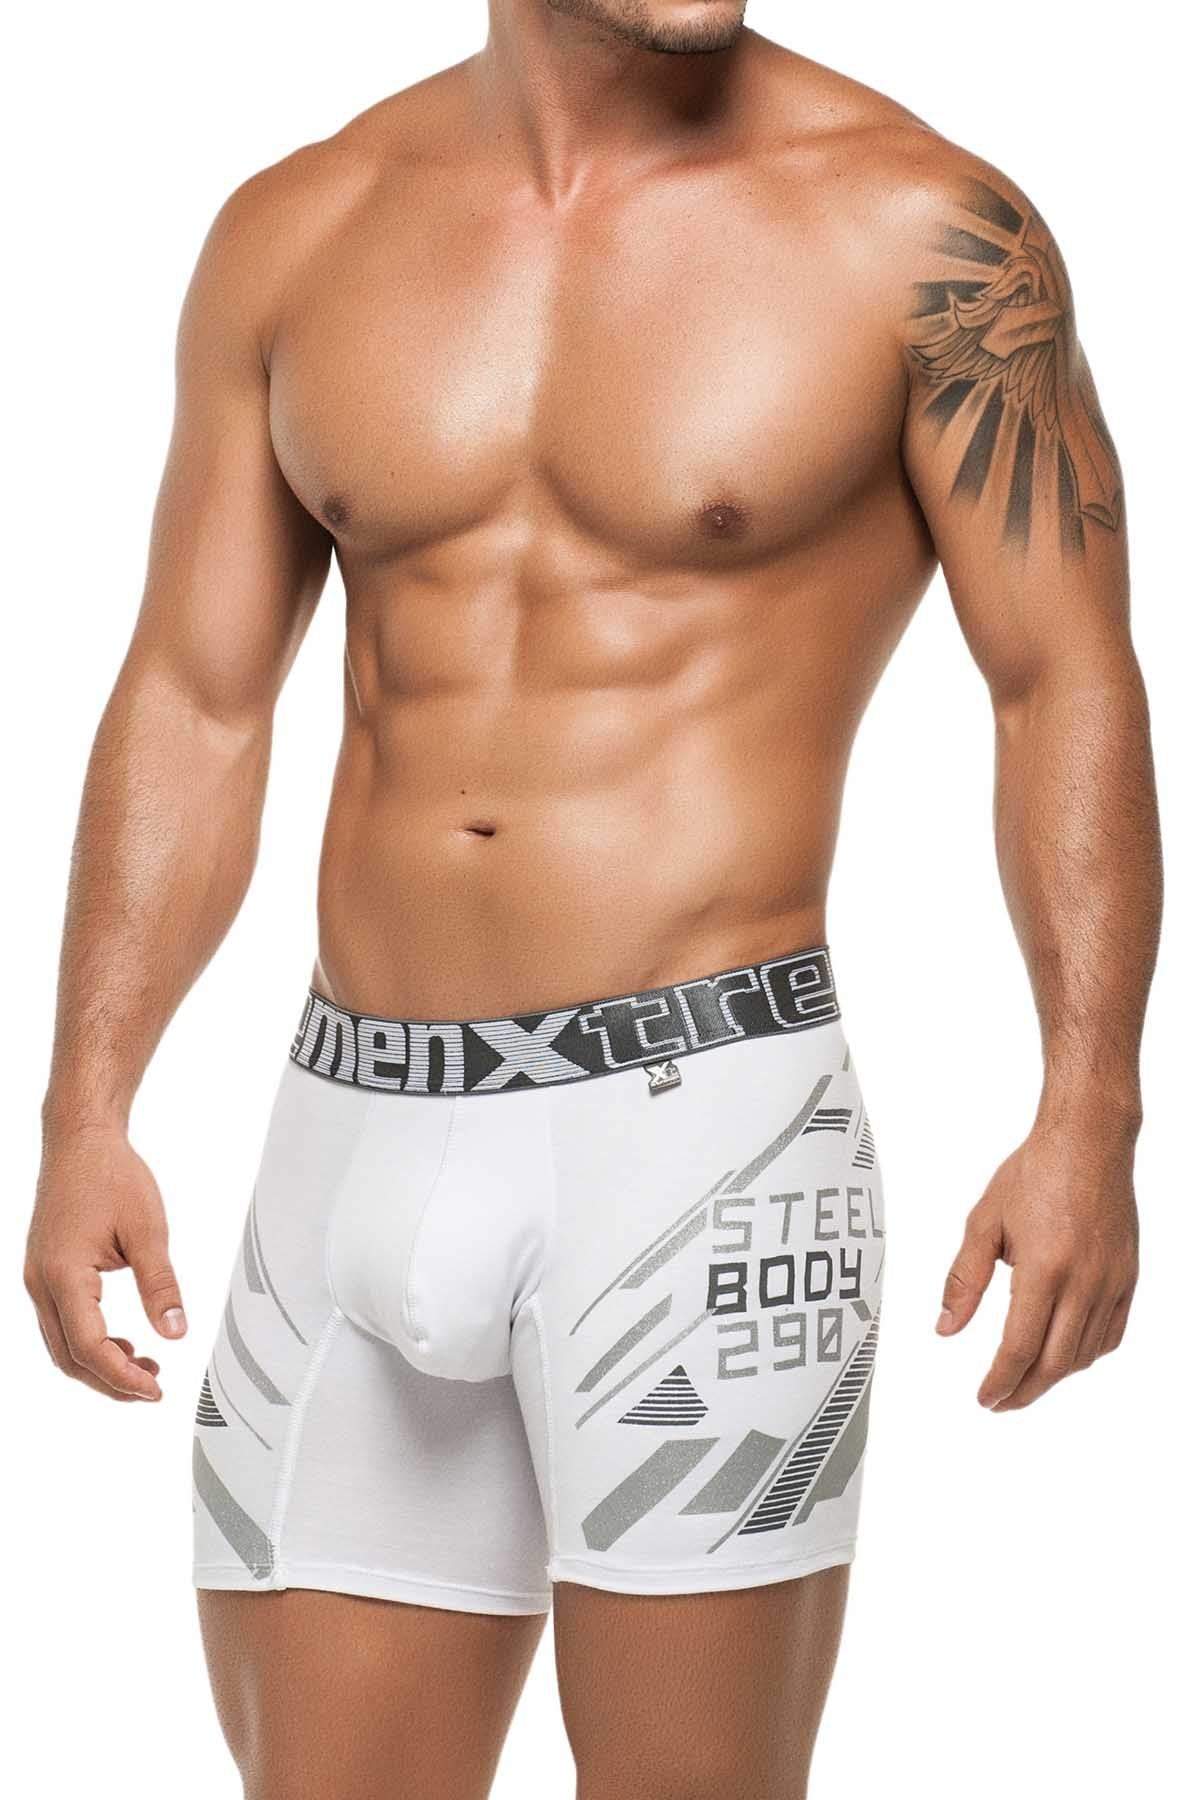 Xtremen White Steel Body Boxer Brief